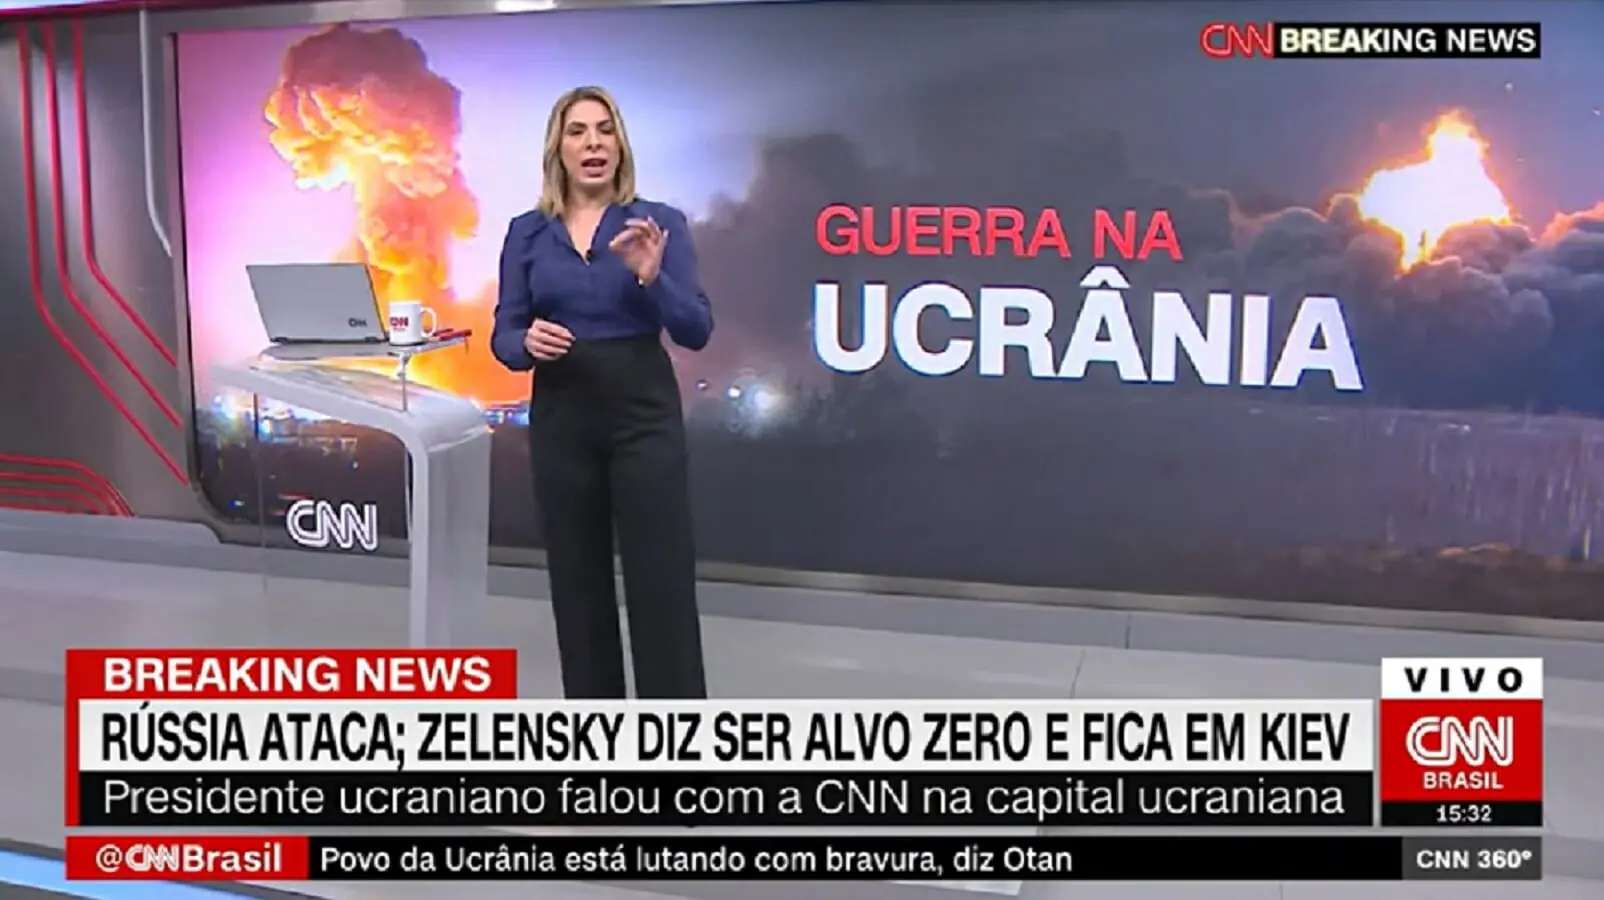 Daniela Lima, com seu 360º, leva CNN Brasil à liderança de audiência